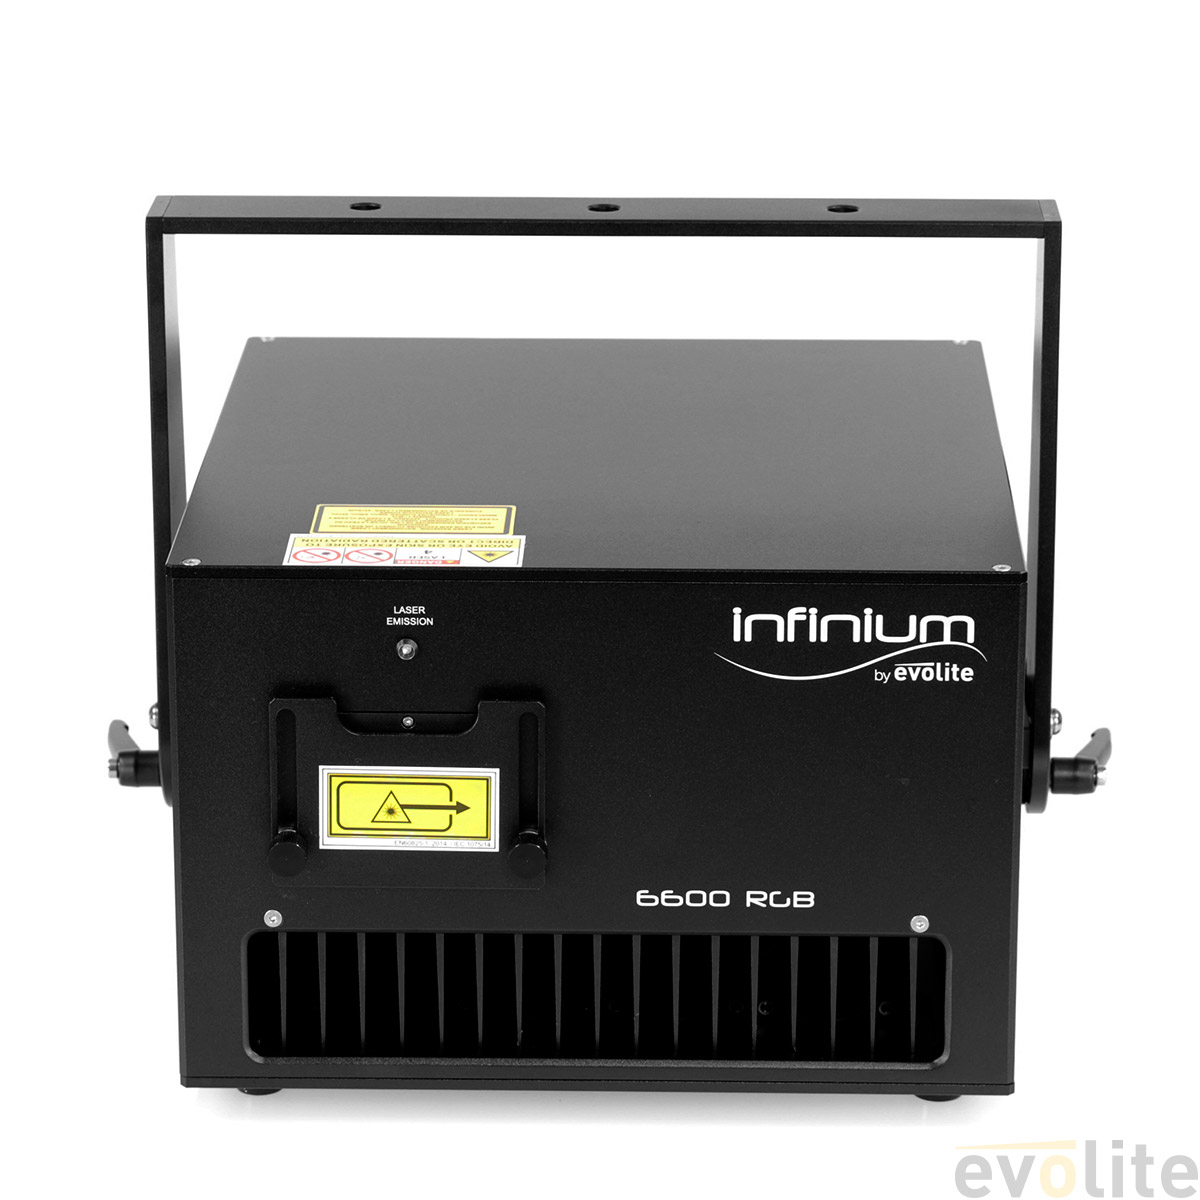 Infinium 6600 RGB Evolite